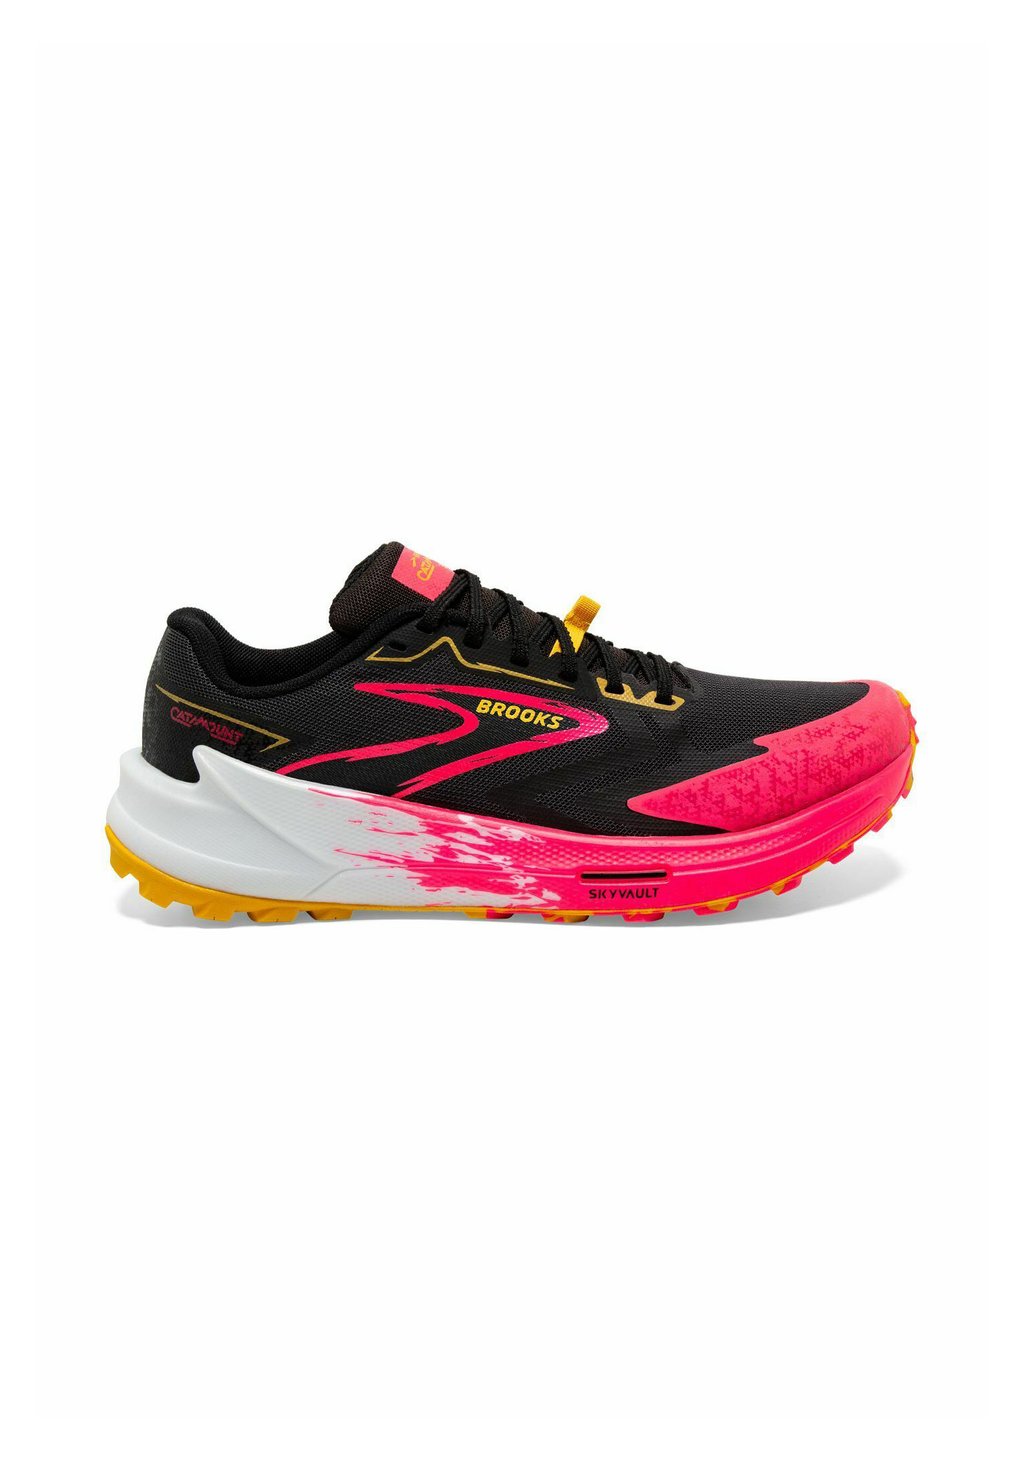 Кроссовки для бега по пересеченной местности CATAMOUNT 3 Brooks, цвет black diva pink lemon chrome